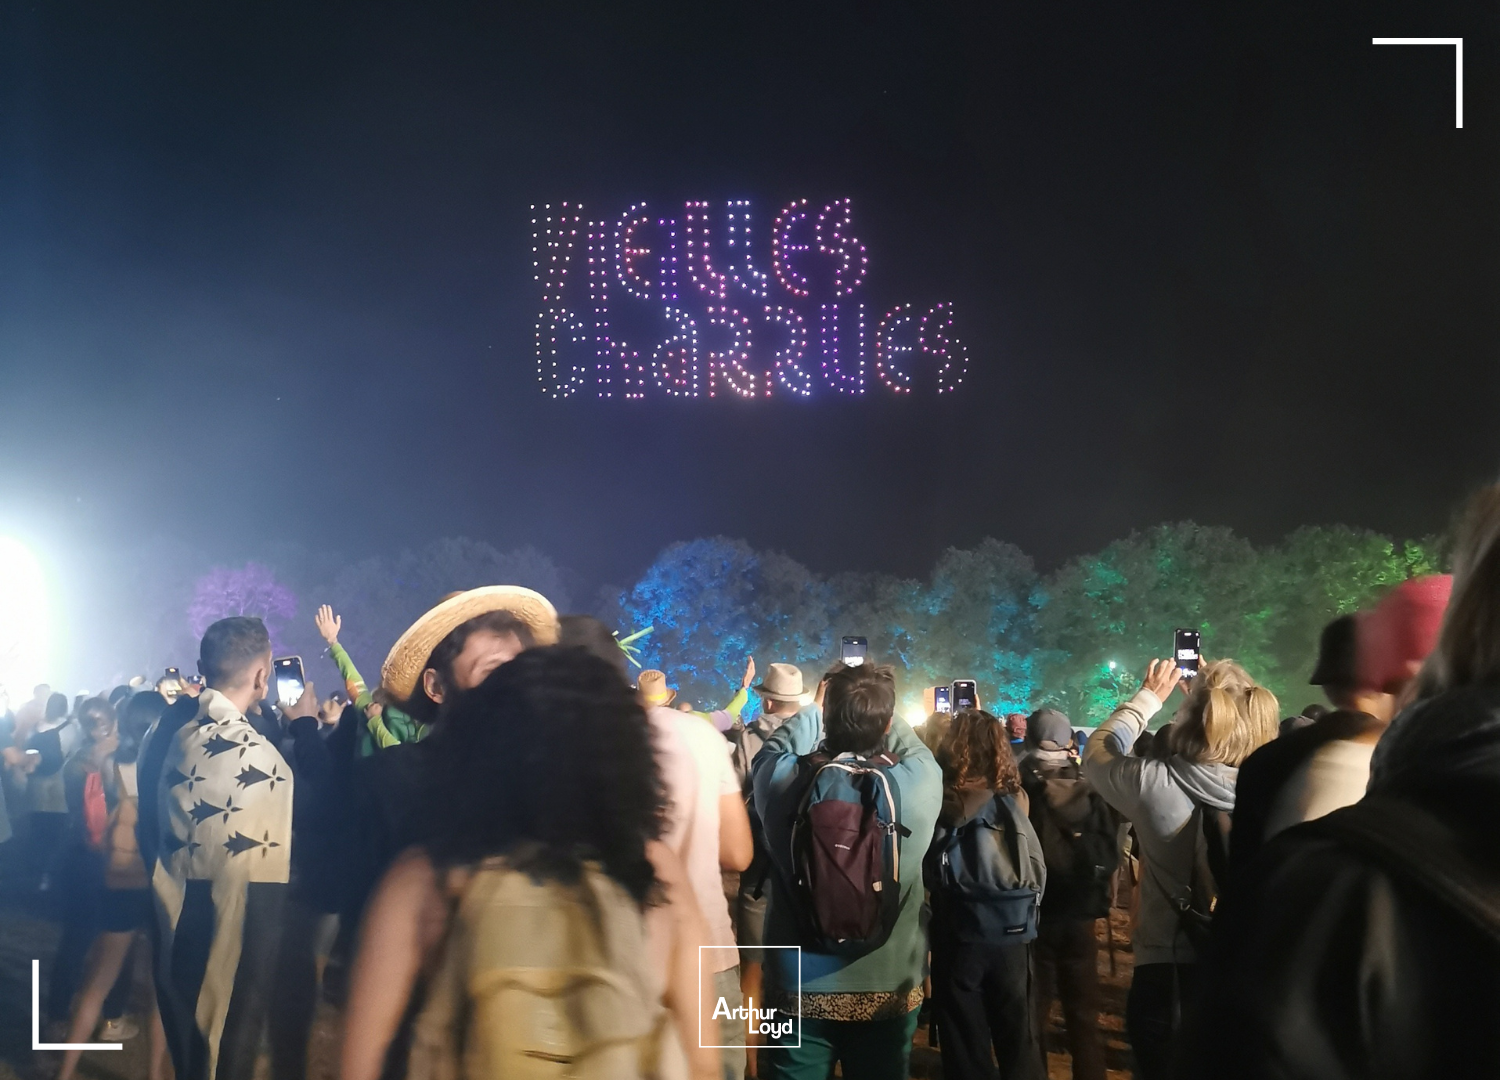 Drônes formant les mots "Vieilles Charrues" dans le ciel lors du Festival des Vieilles Charrues à Carhaix